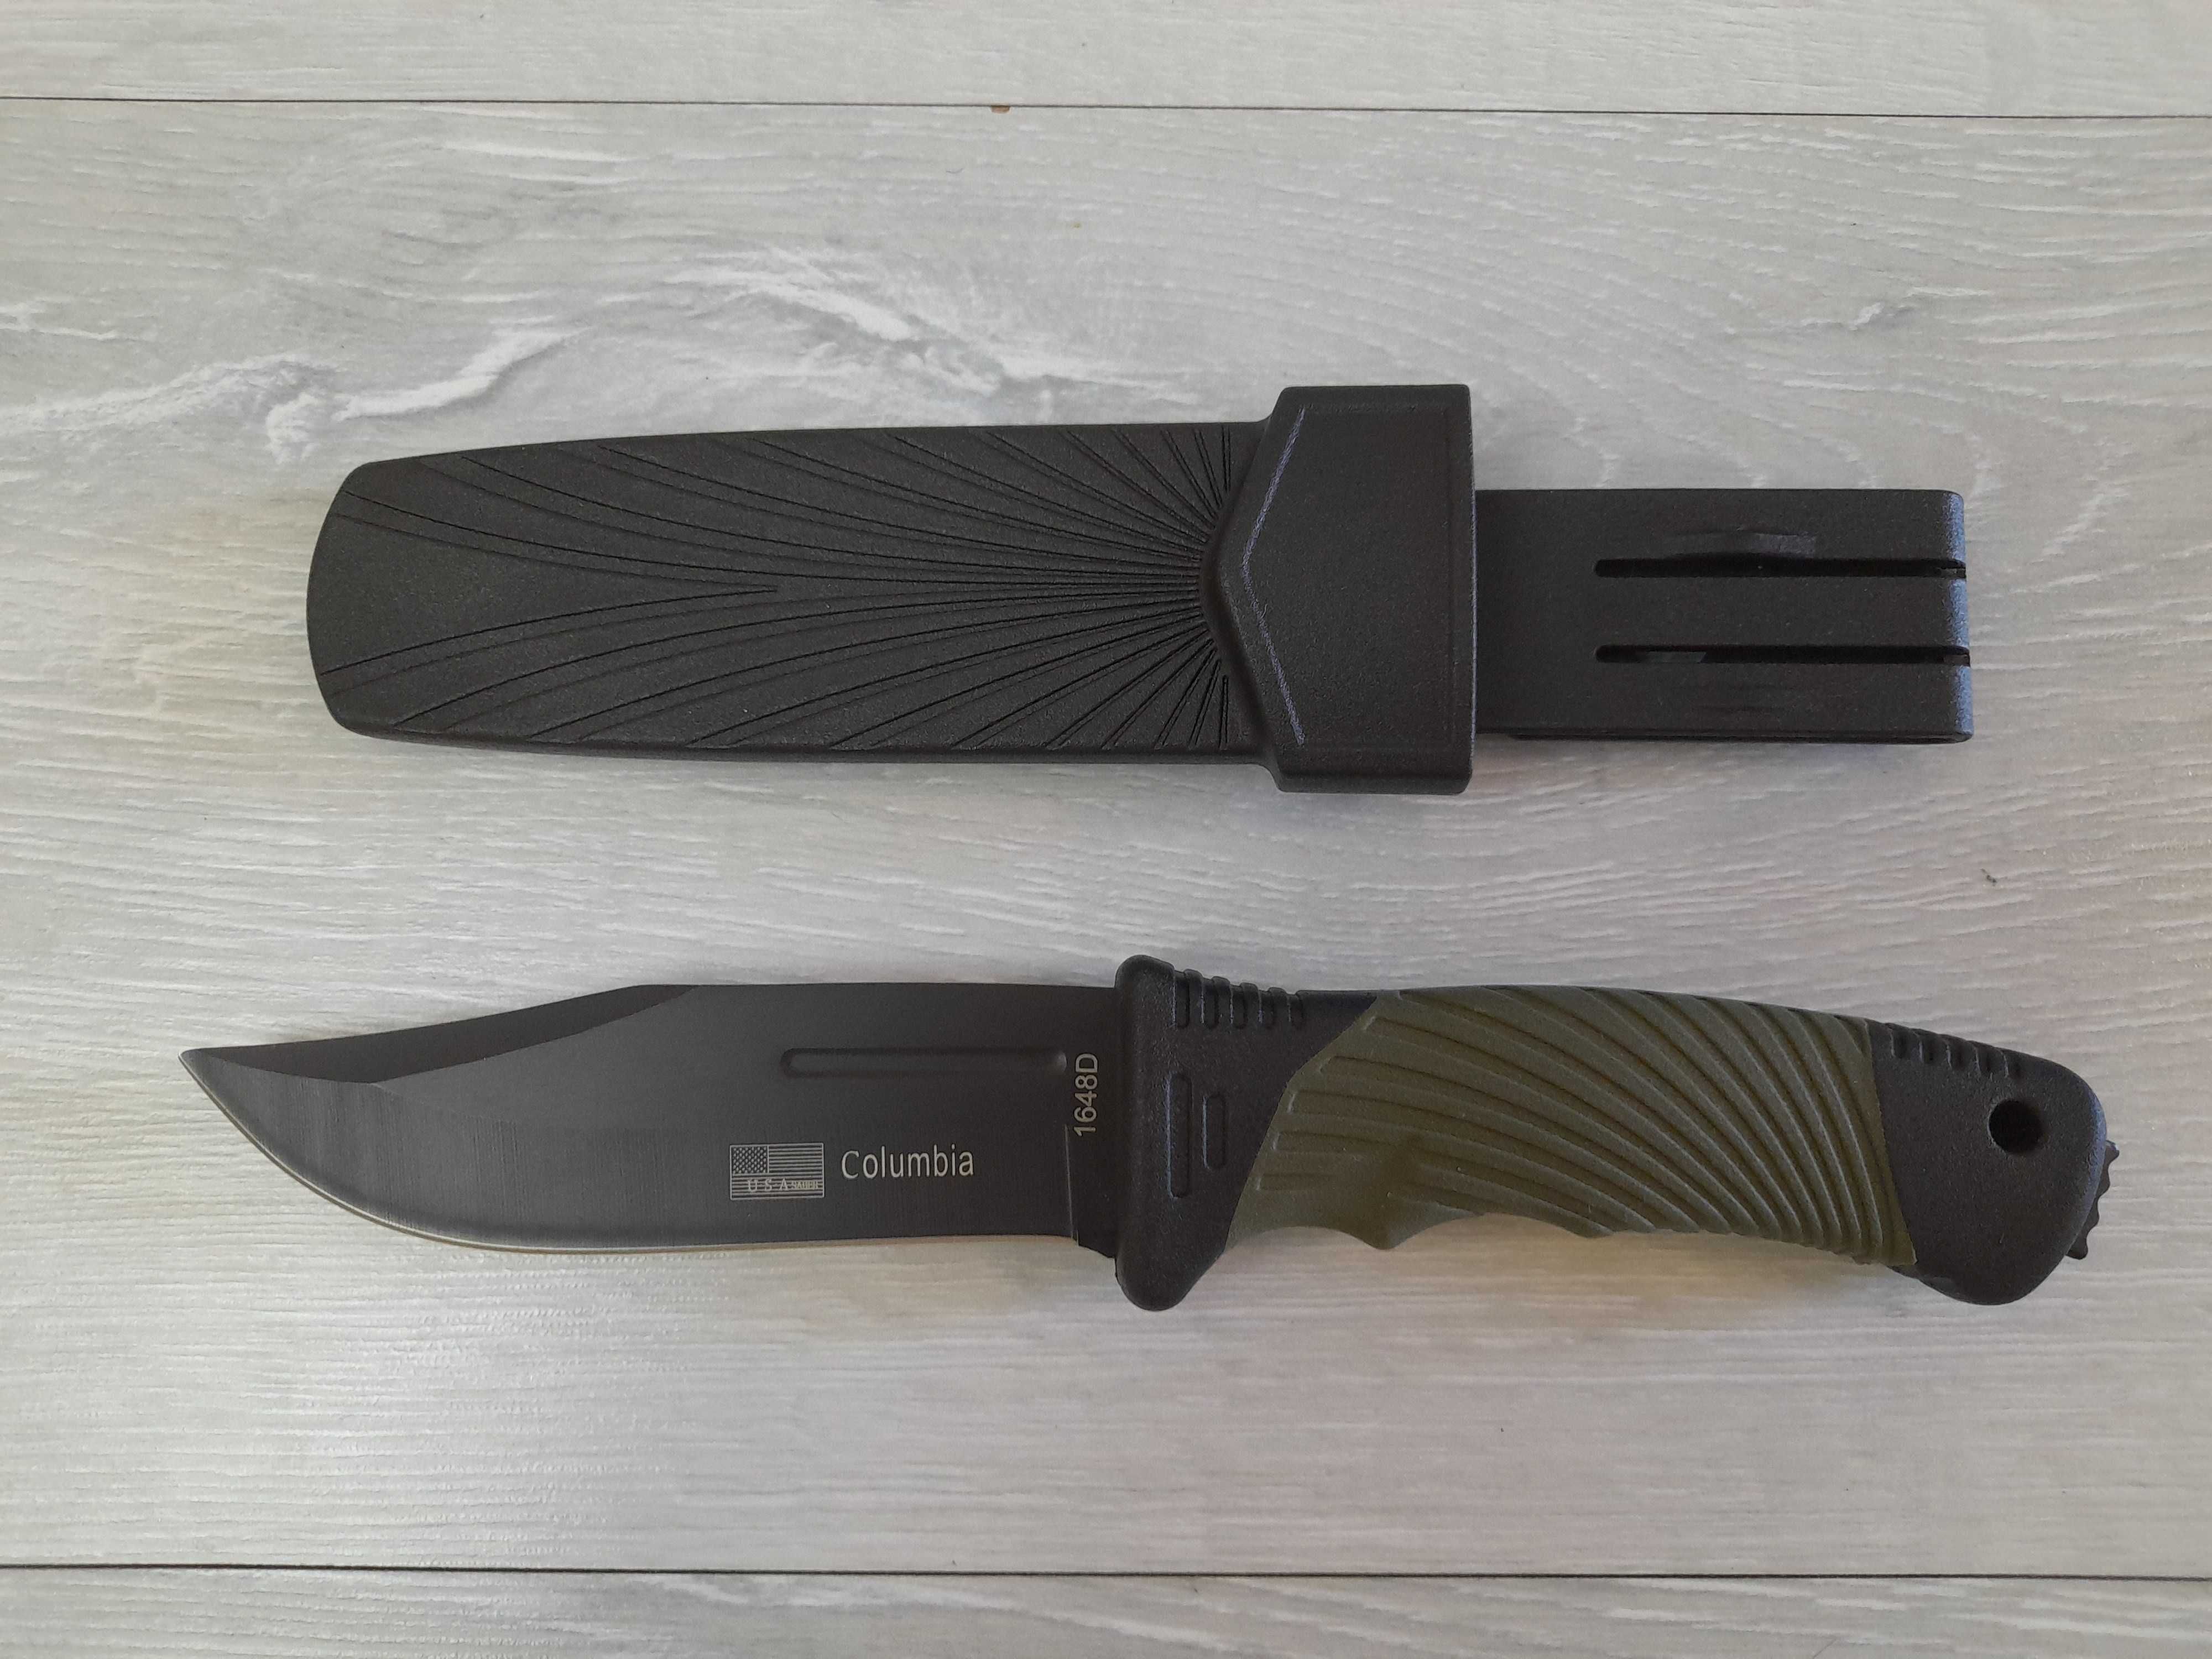 Нож в пласт чехле, Columbia 1648D, 8123, Д- 23,7 см, сталь 440В,